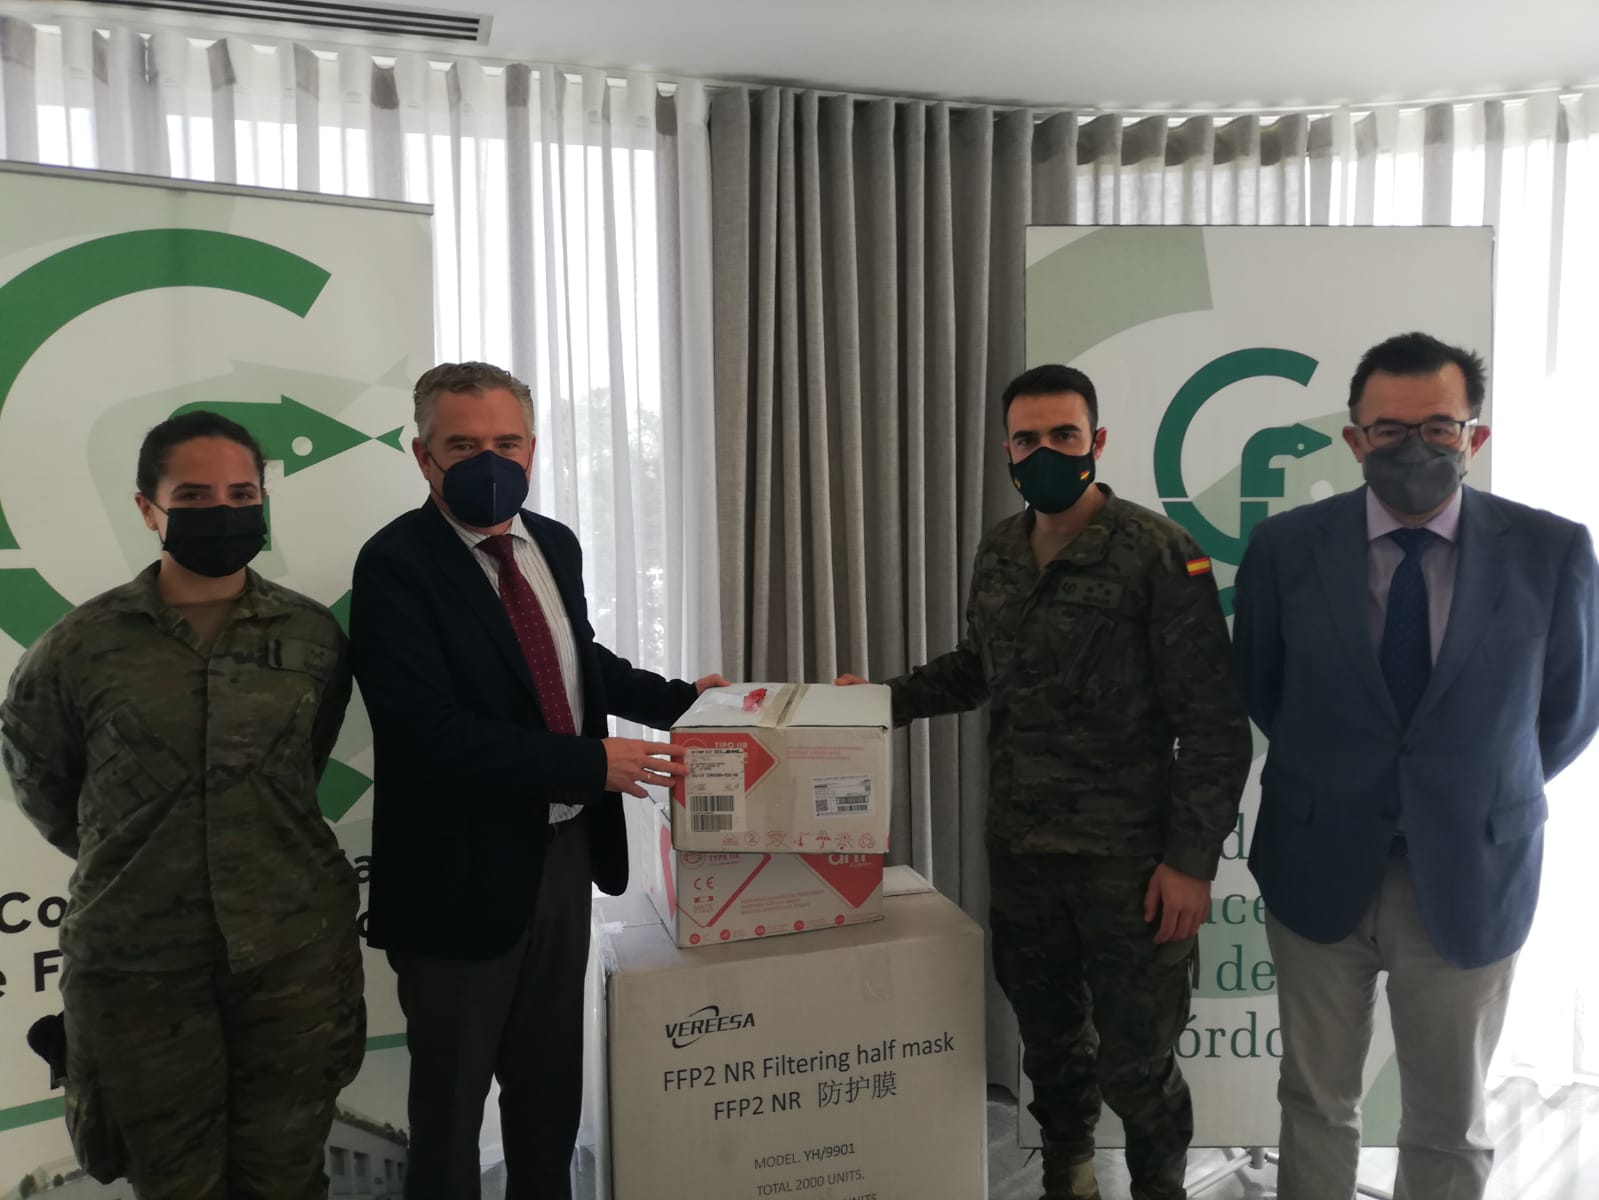 El Colegio de Farmacéuticos de Córdoba entrega 4.000 mascarillas FFP2 a la Brigada Guzmán El Bueno X de Cerro Muriano para su próxima misión humanitaria en Líbano